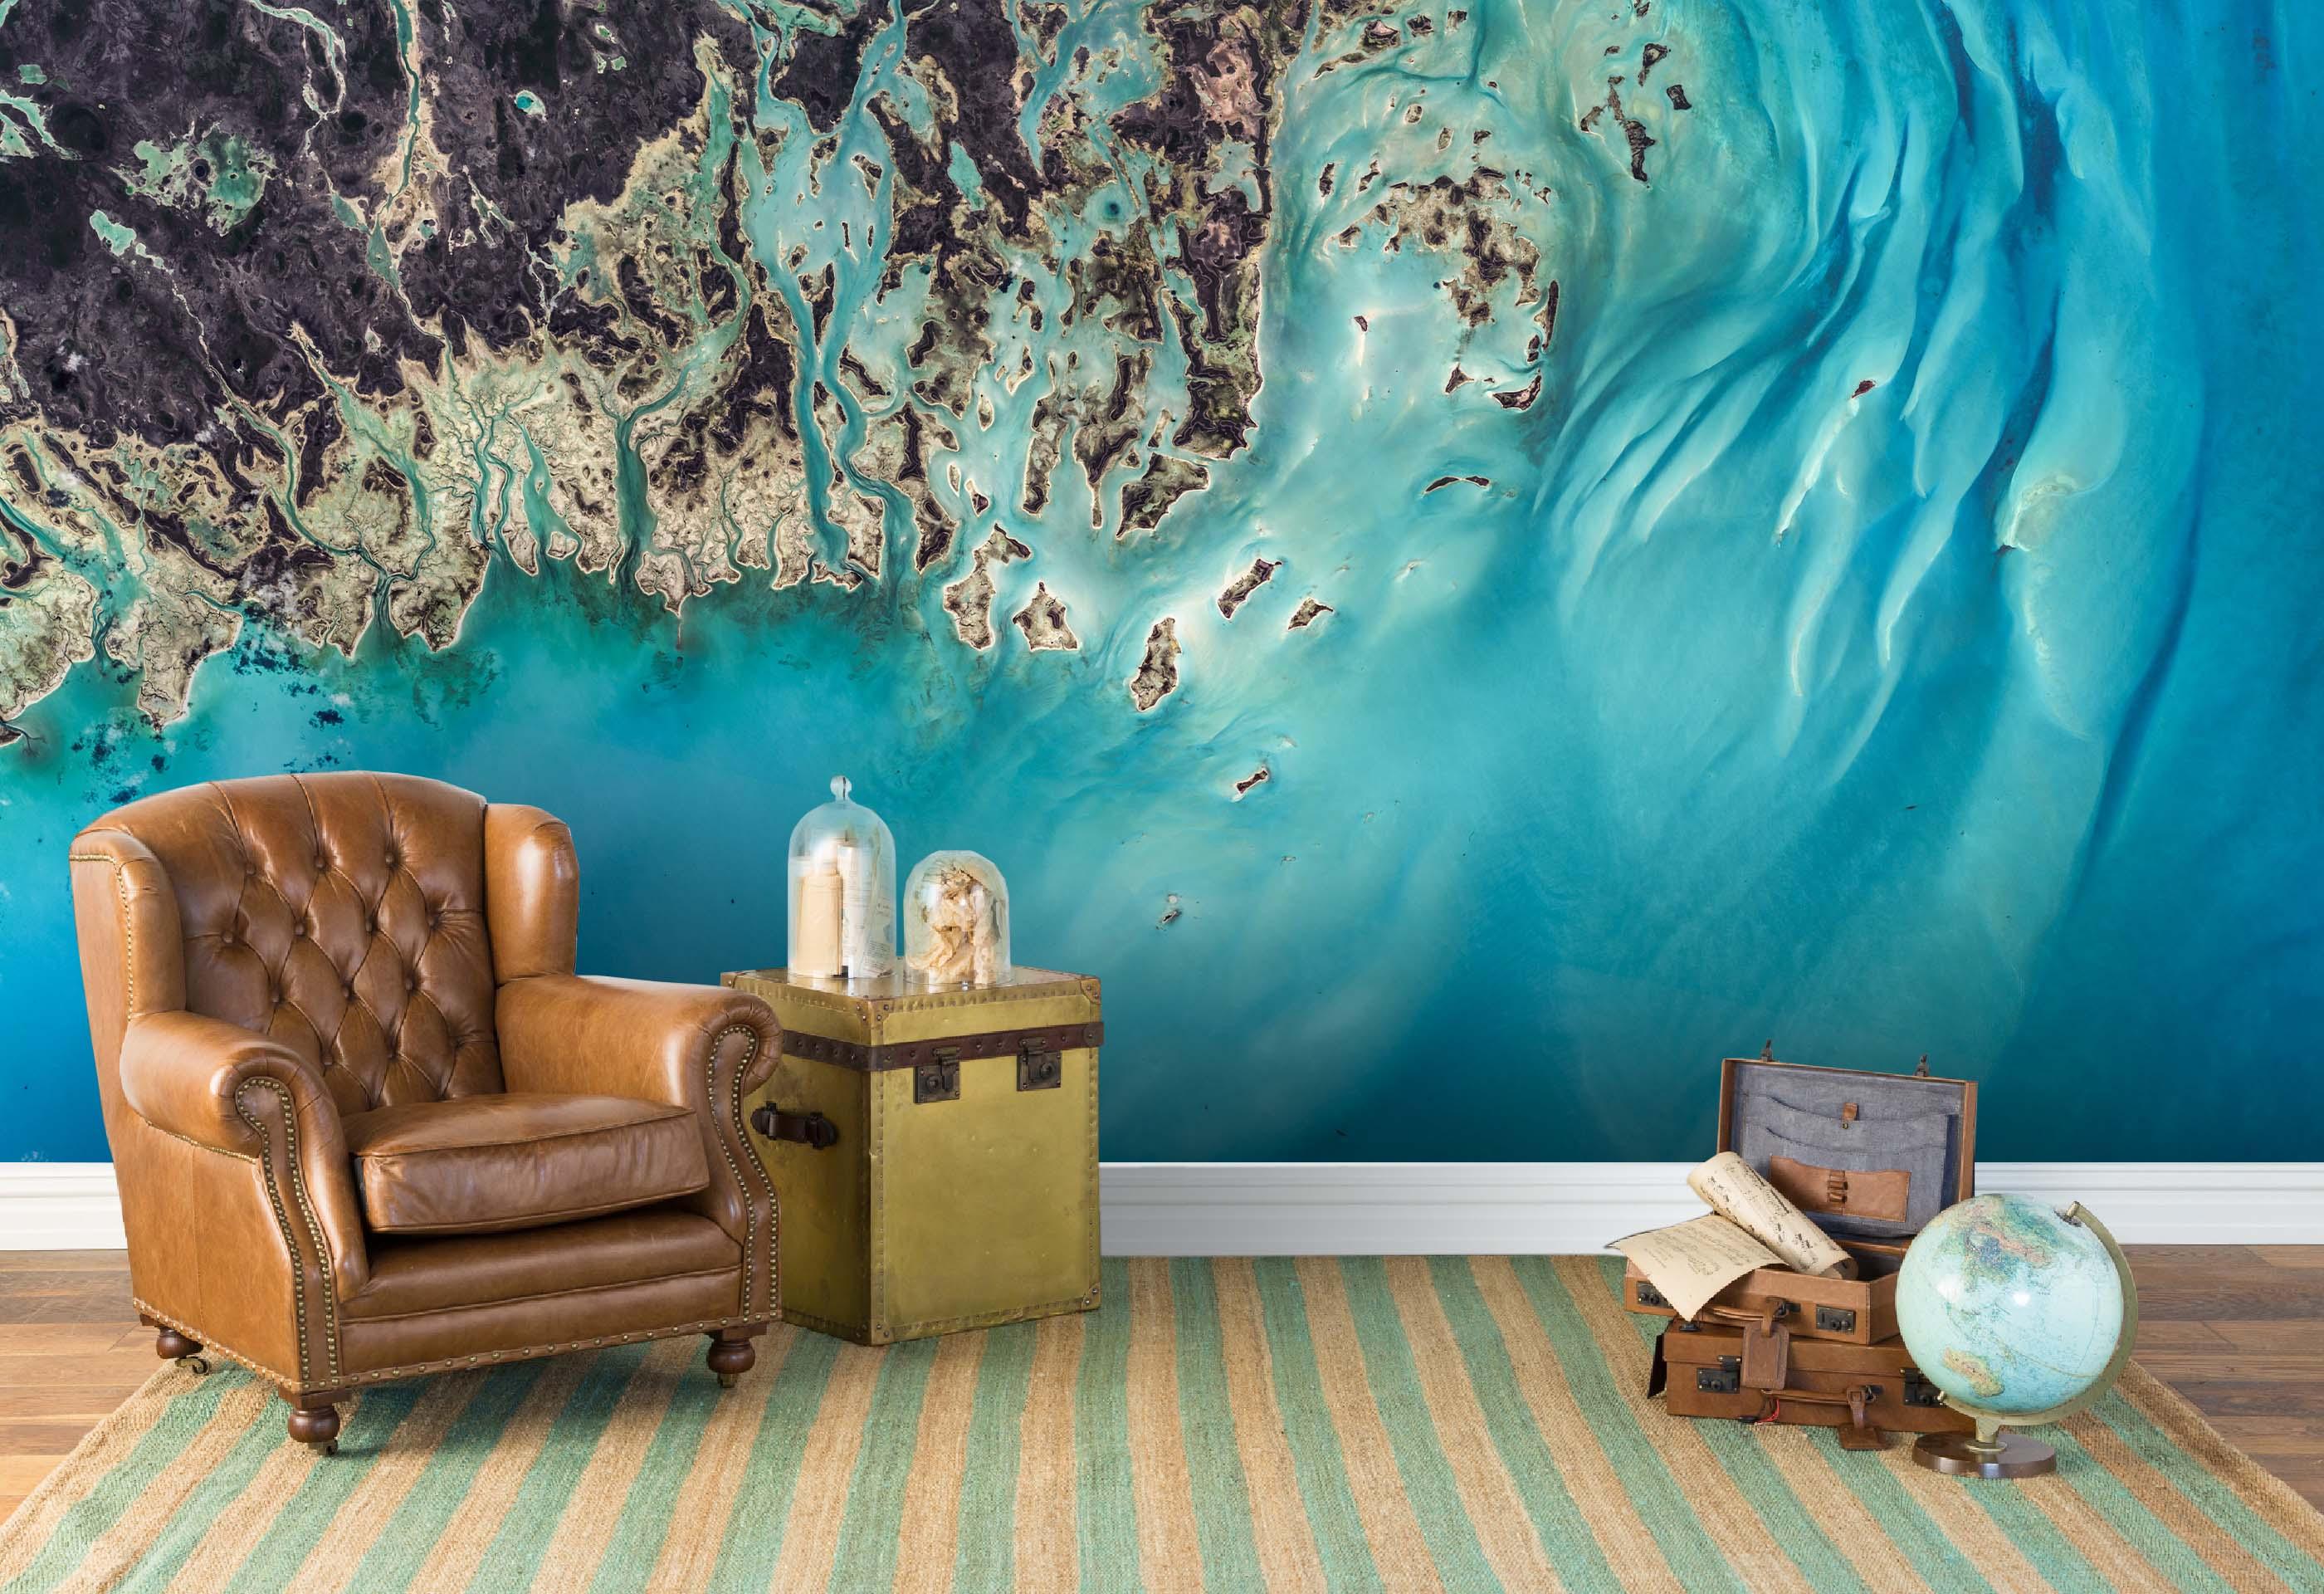 3D Overlooking Sea  Wall Mural Wallpaper 141- Jess Art Decoration